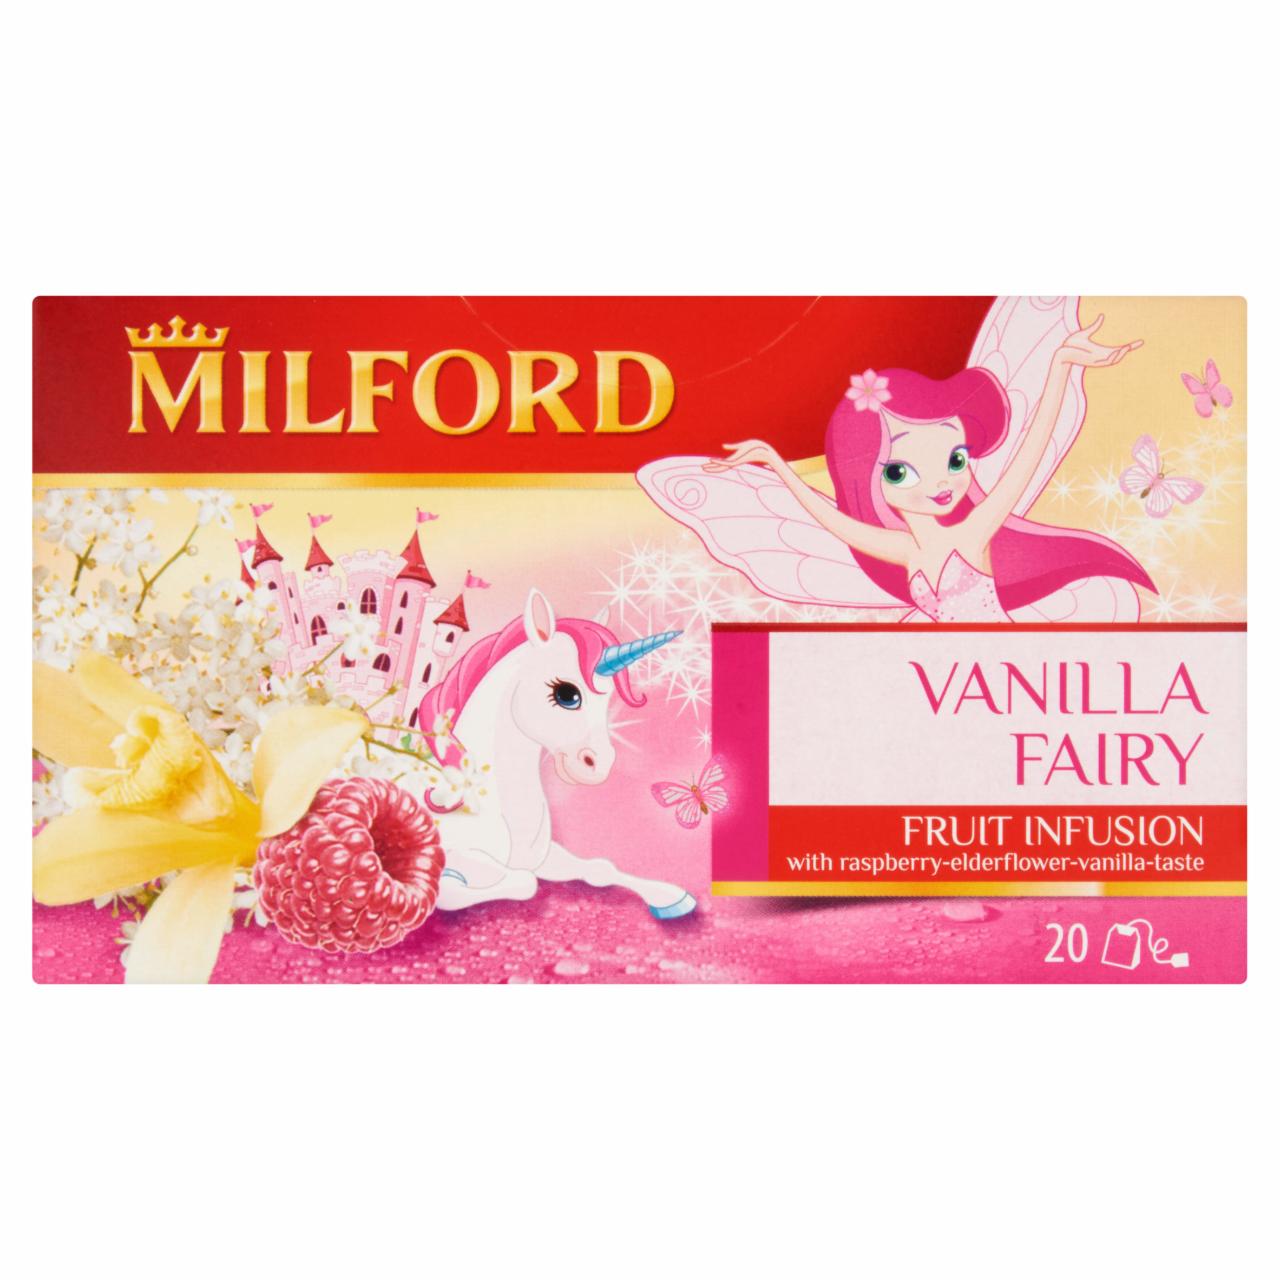 Képek - Milford Fruit Infusion Vanilla Fairy málna-bodza-vanília ízű gyümölcstea 20 filter 50 g